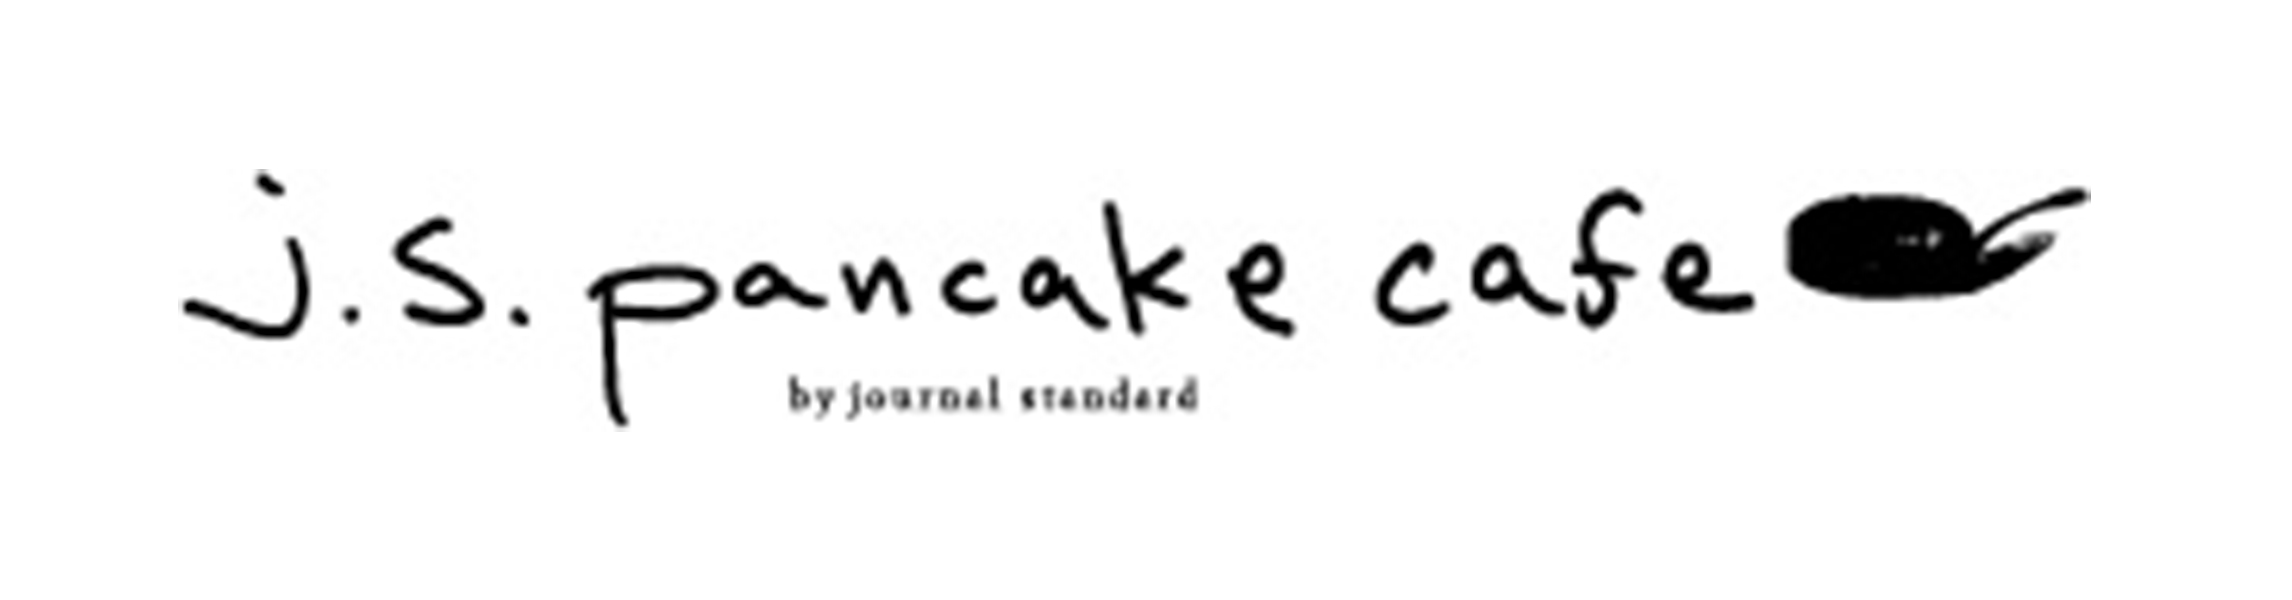 j.s. pancake cafe 